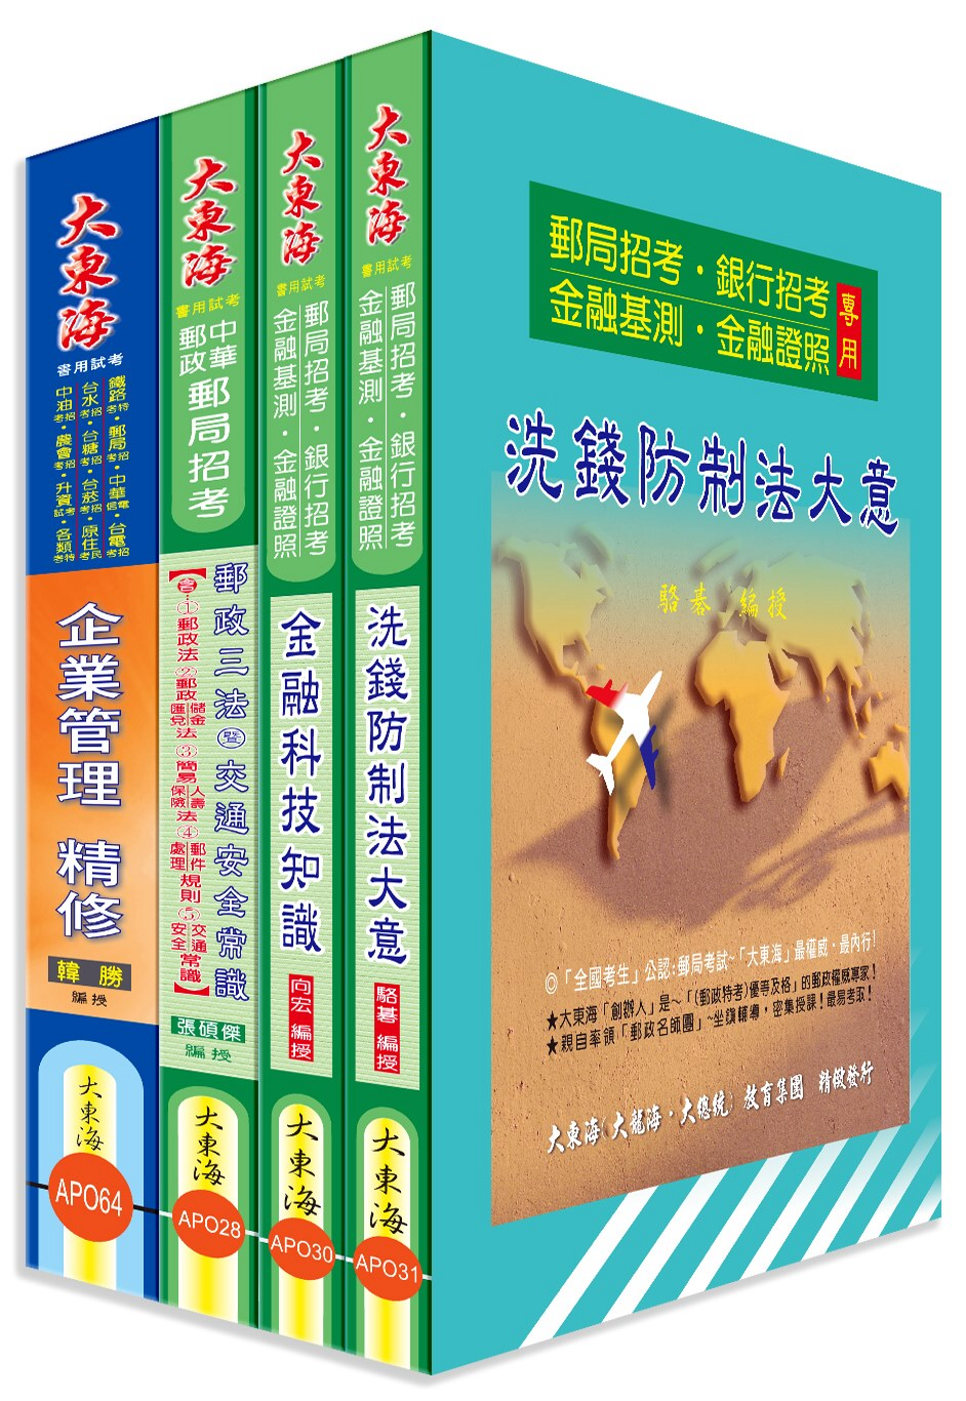 中華郵政(專業職二-內勤) 專業科目套書